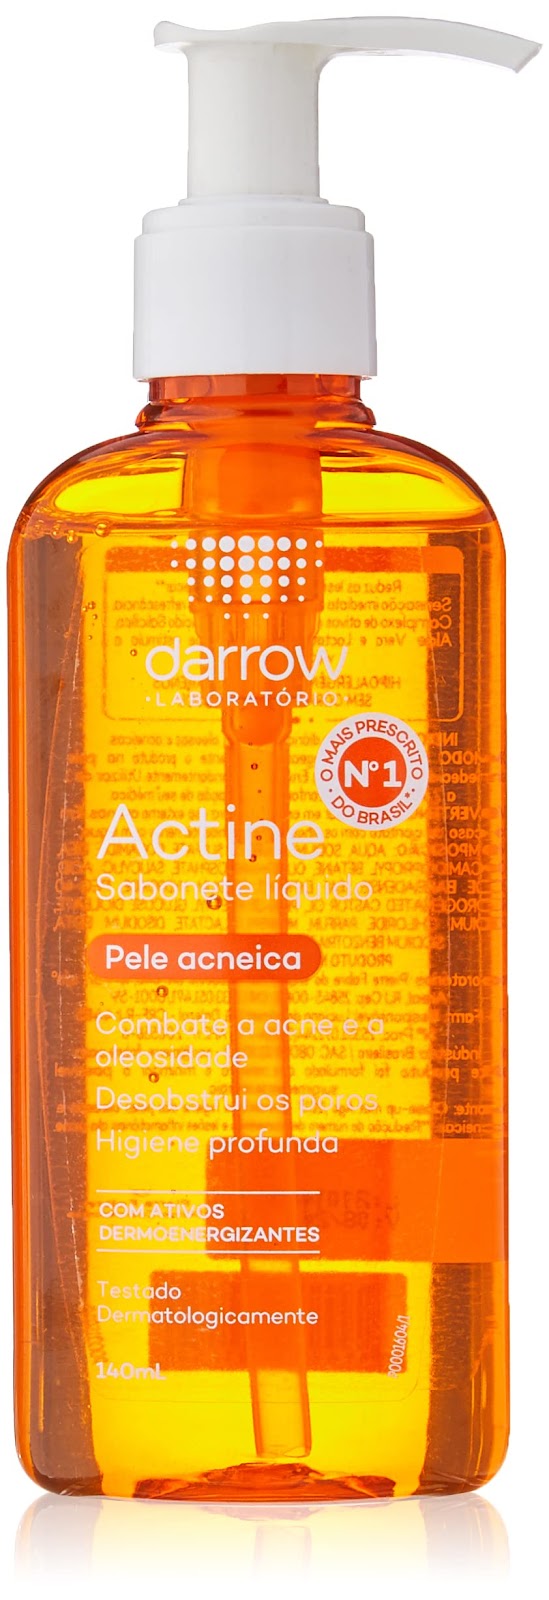 Darrow Actine Sabonete Liquido/ gel de limpeza, 140 ml